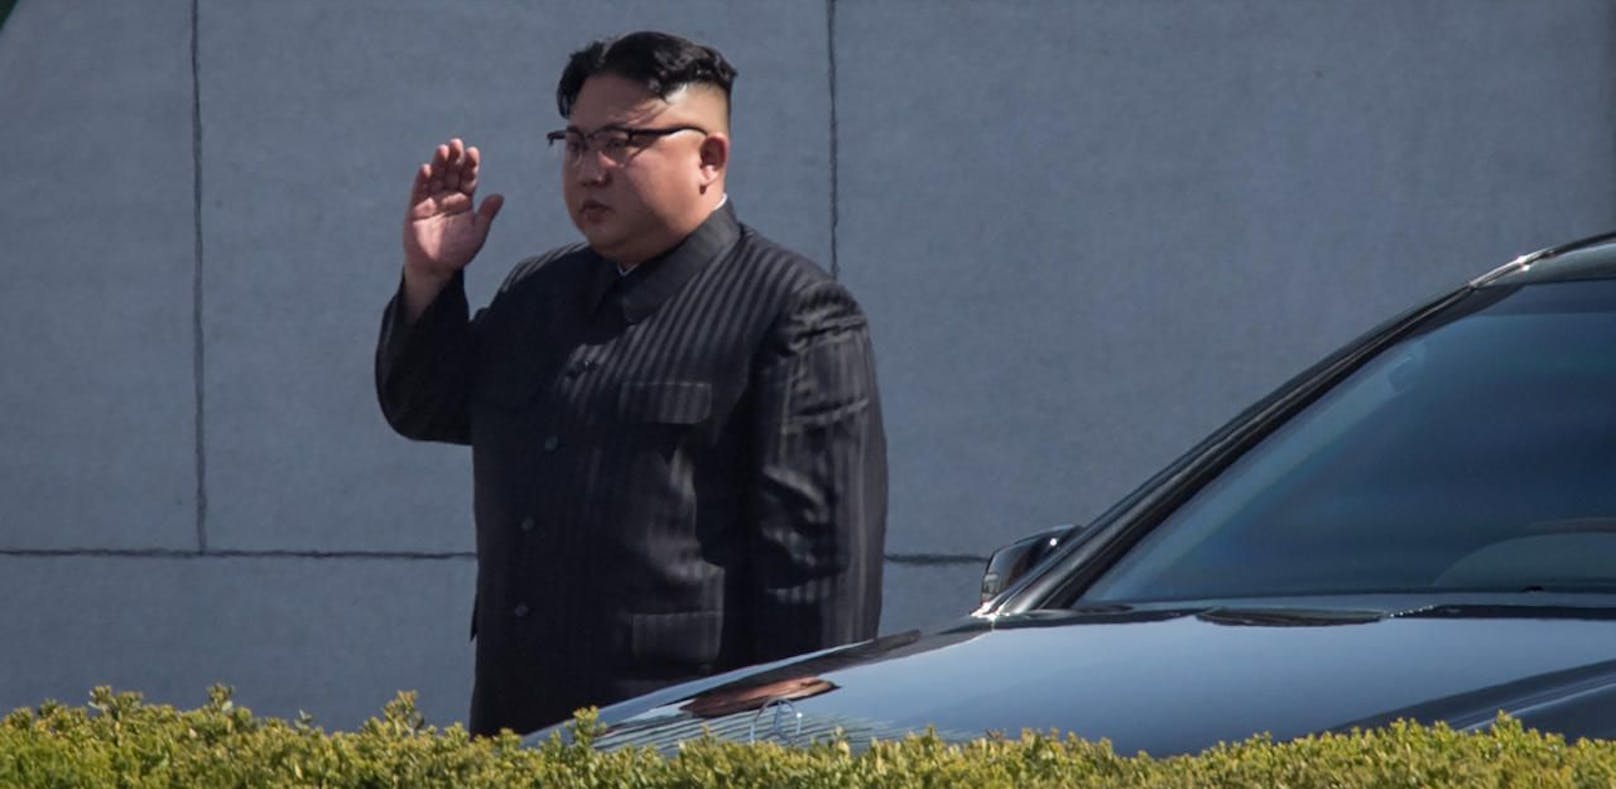 Recht und Ordnung werden von Kim Jong-un offenbar nur im eigenen Land durchgesetzt.